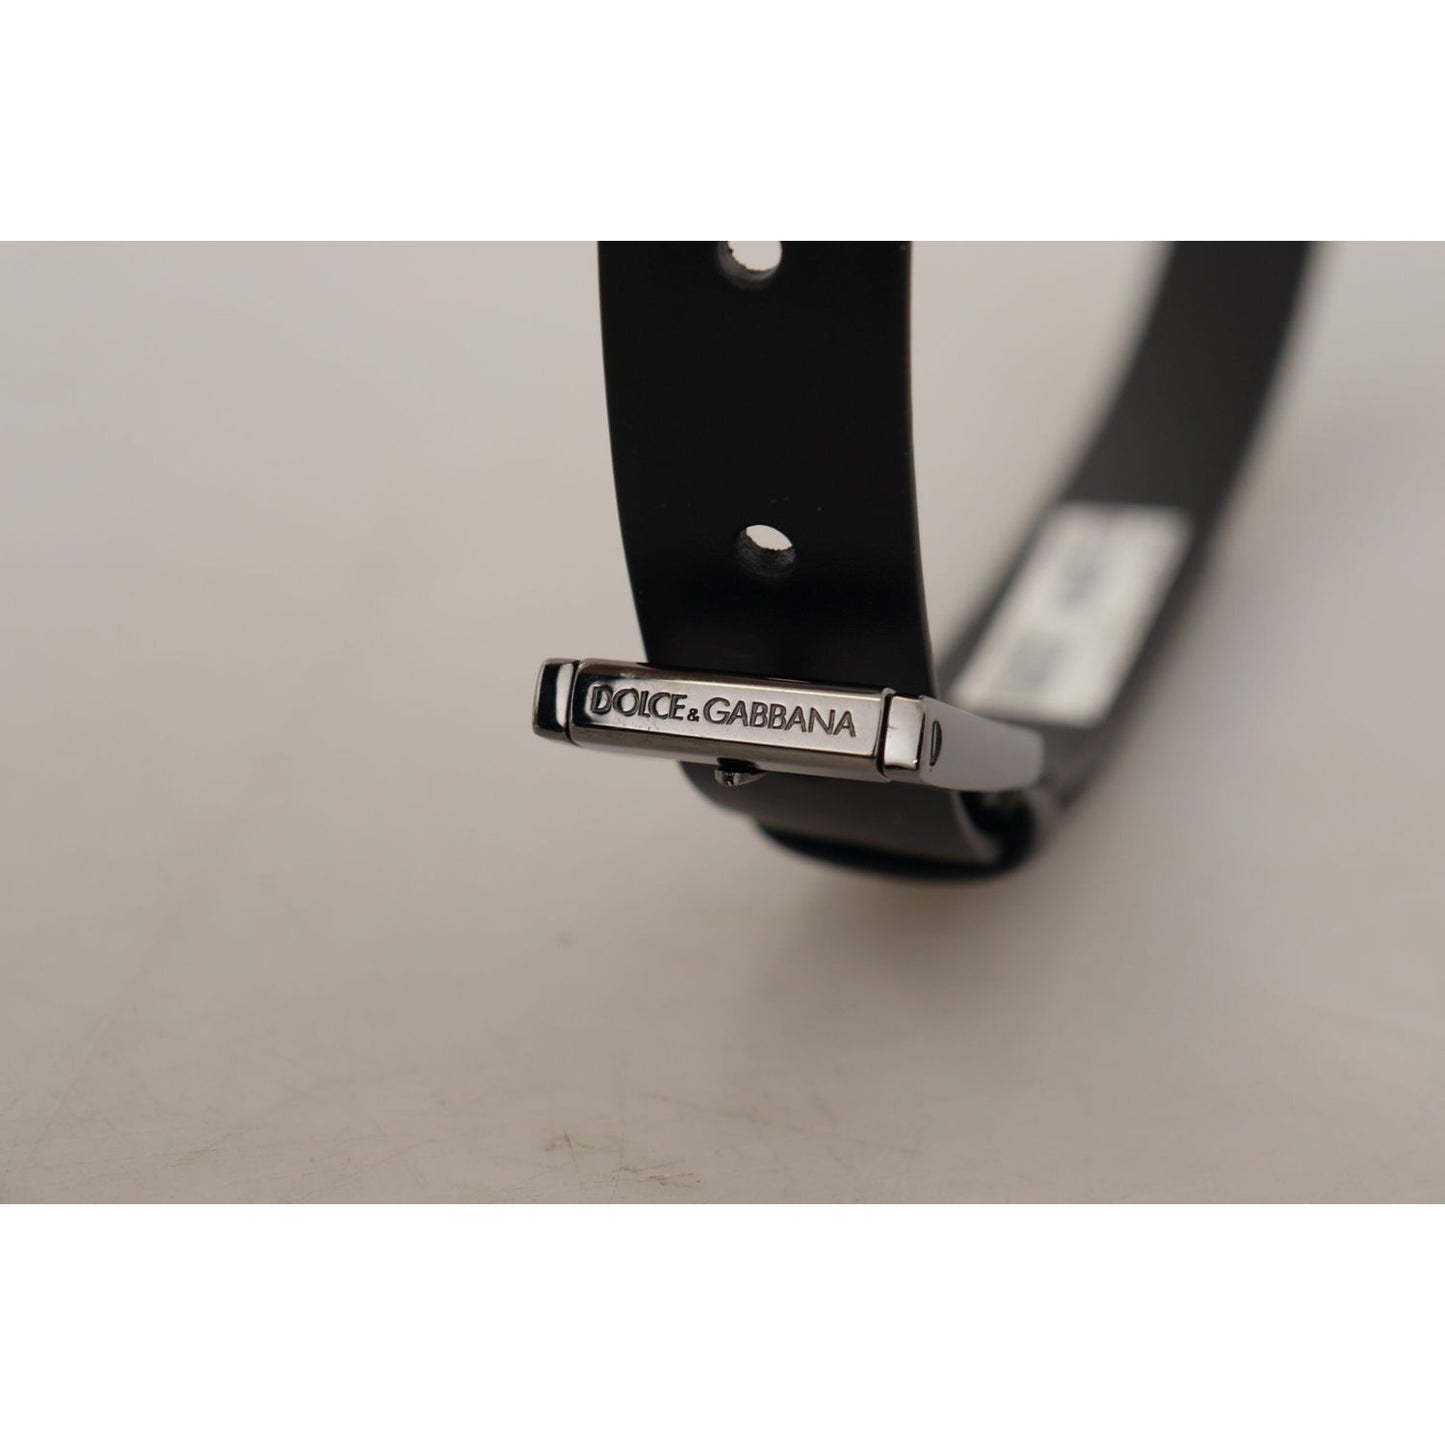 Dolce & Gabbana Elegant Black Leather Belt with Metal Buckle black-calf-leather-vintage-steel-logo-buckle-belt IMG_5437-scaled-7f37a8f0-90d.jpg